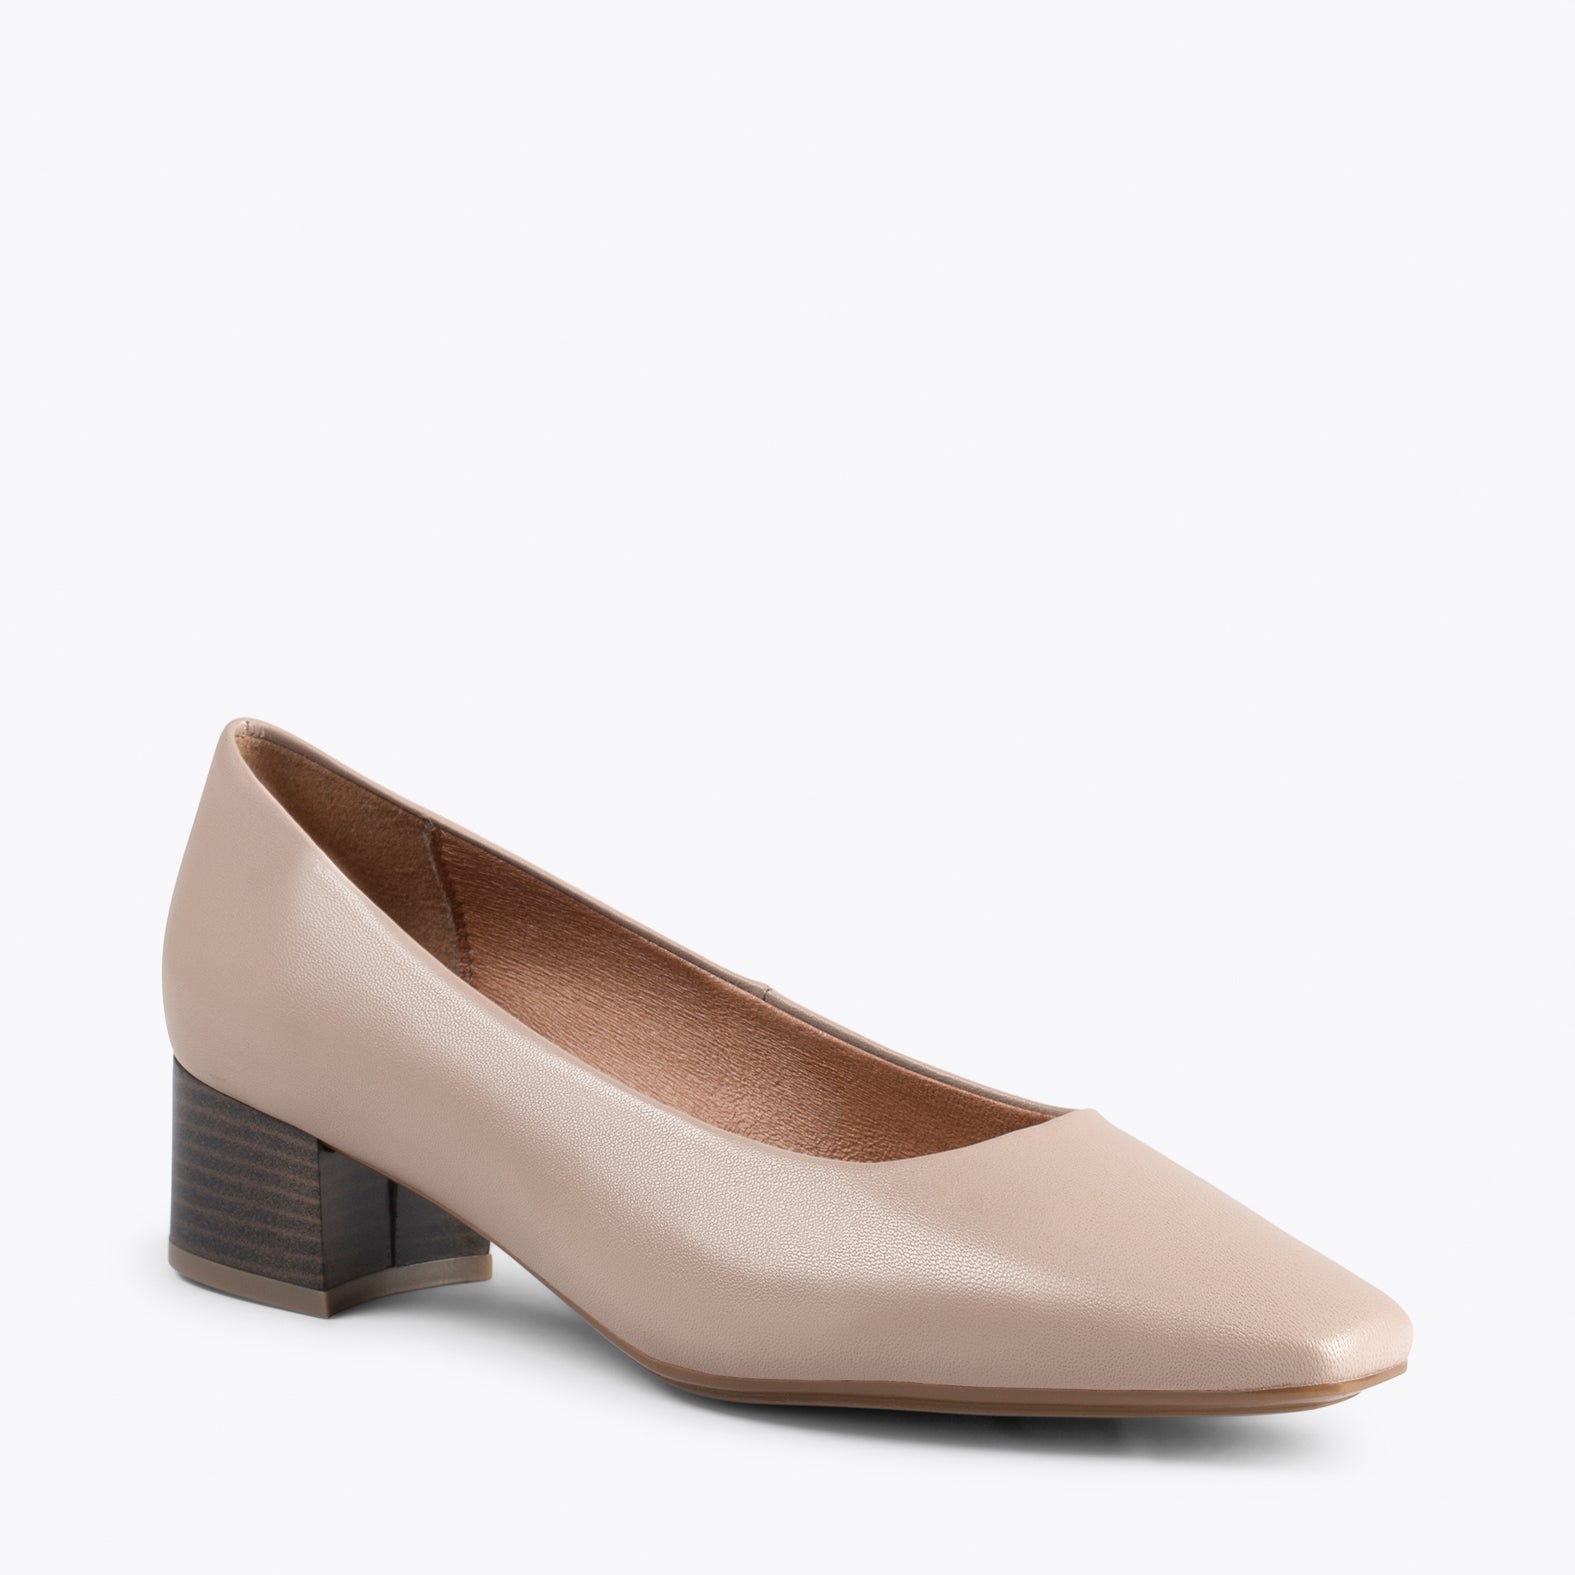 URBAN LADY – Chaussures à talon bas en cuir nappa TAUPE